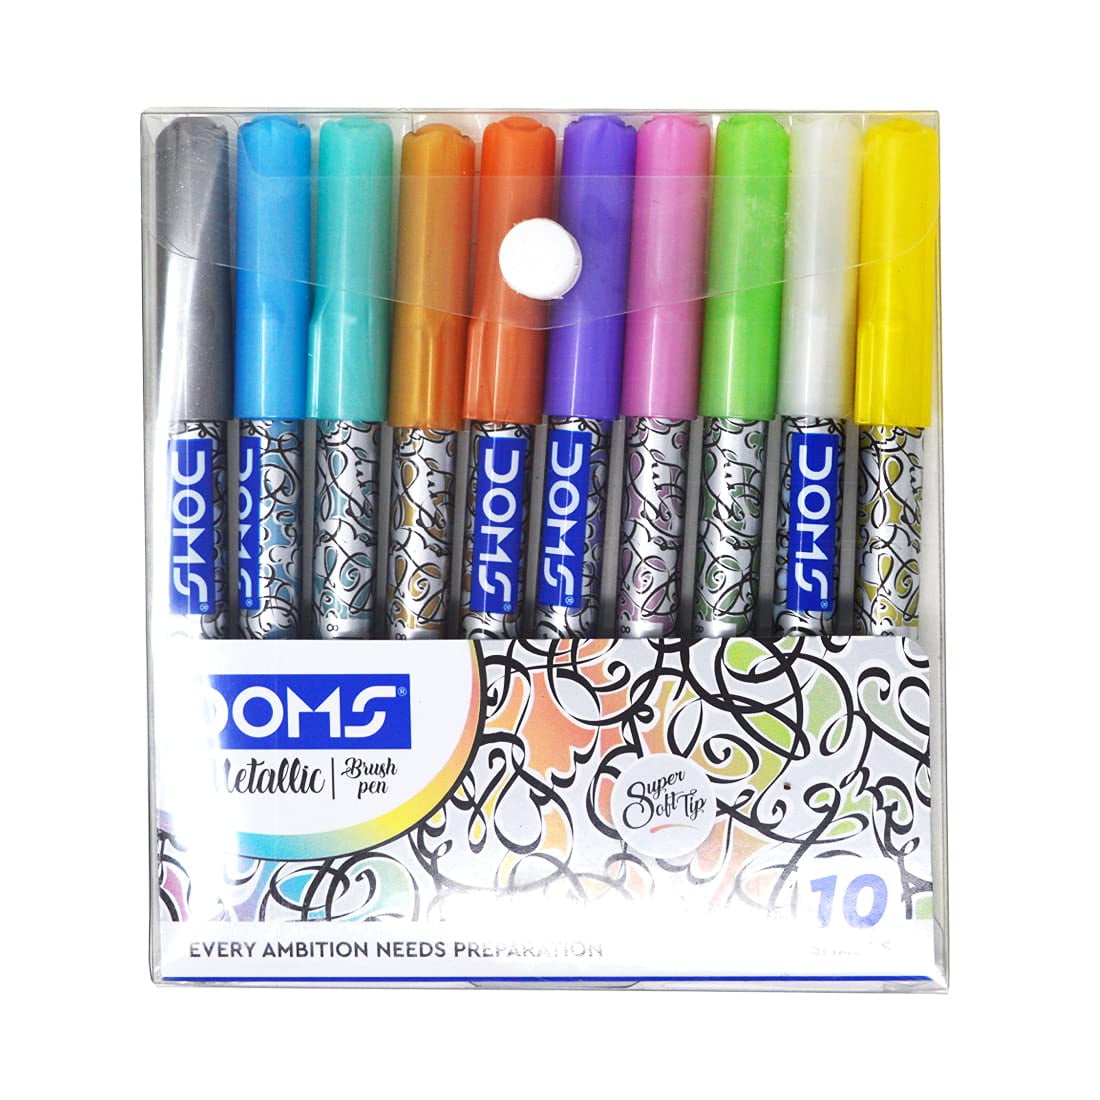 Doms Metallist Series Metallic Brush Pen (10 Assorted Shades), Multicolor